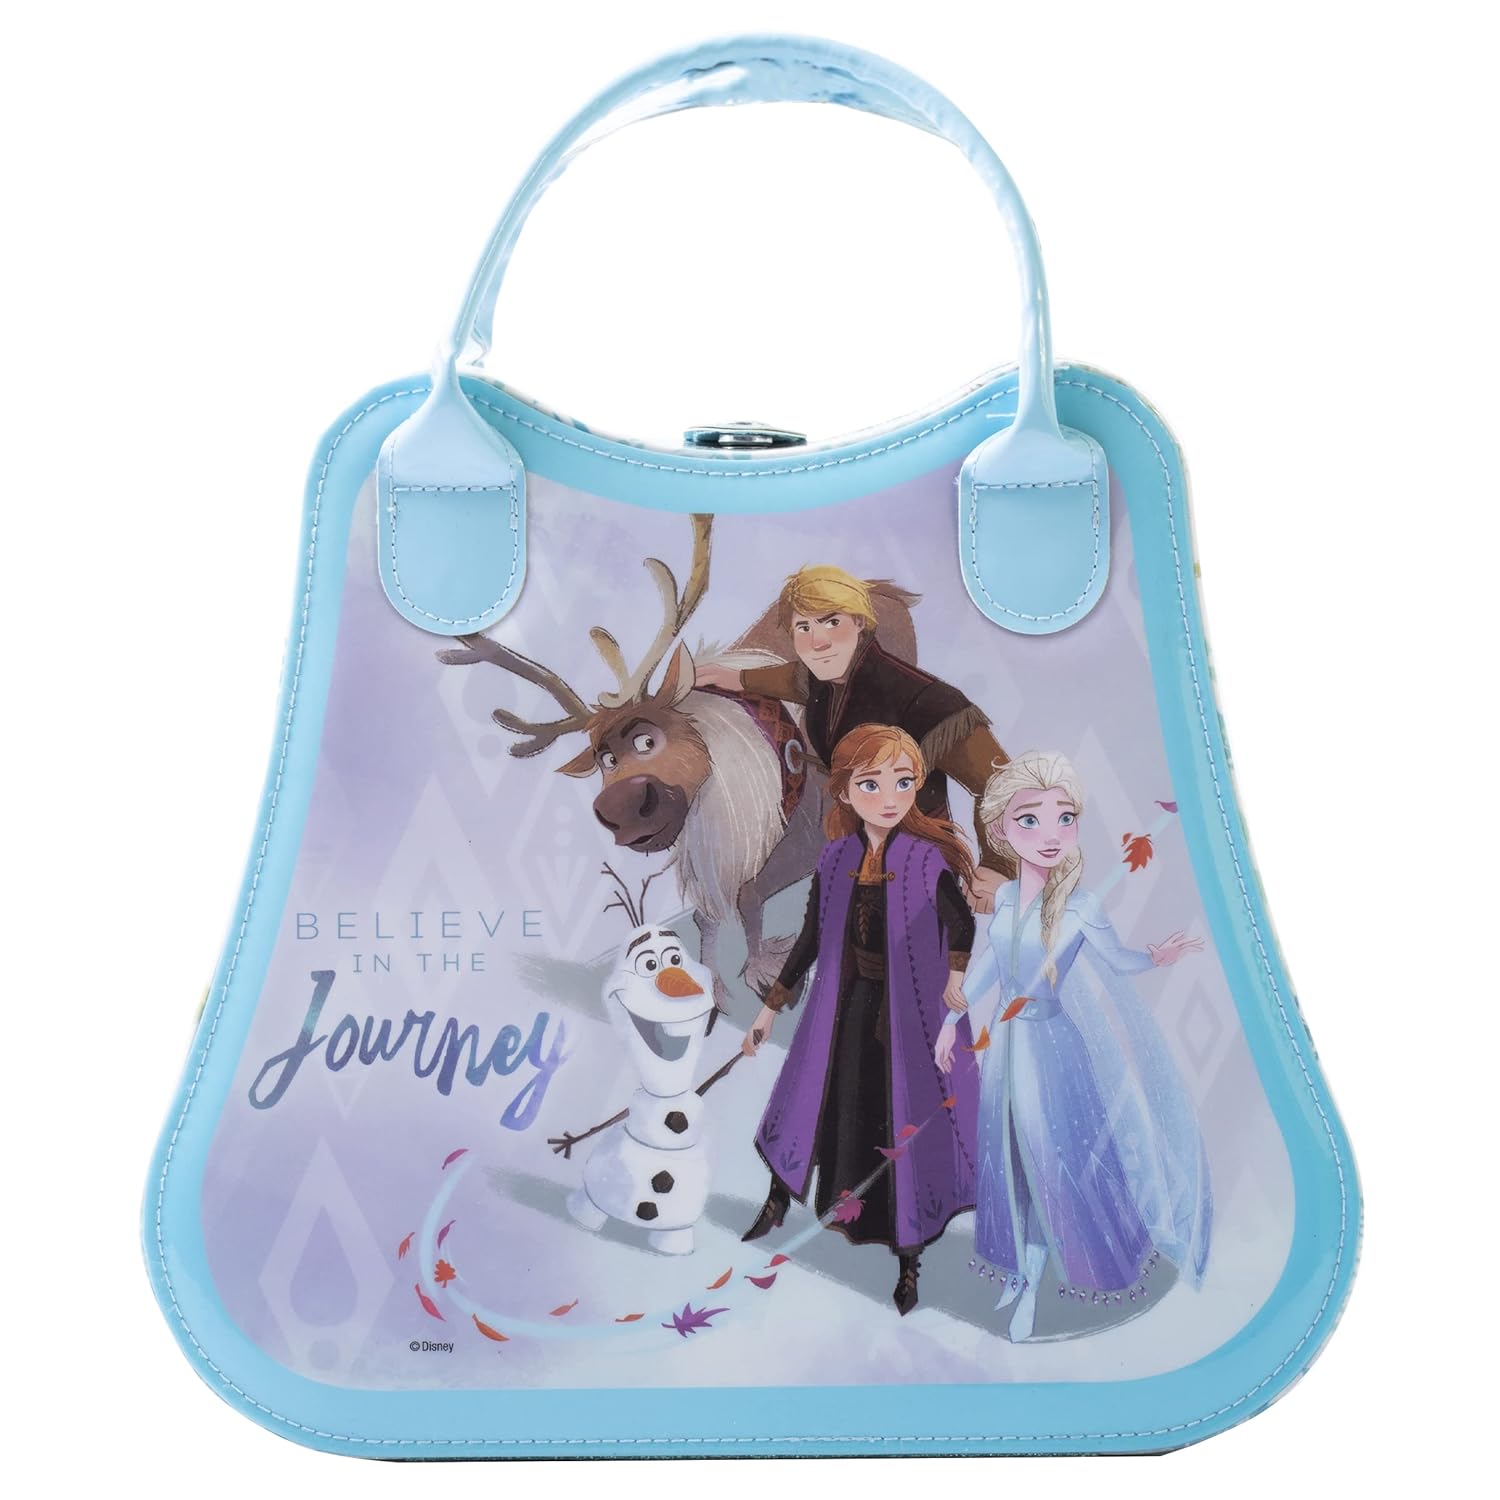 Lip Smacker Disney Frozen Ii Weekender Bag 1.21 pounds, 19.36 Ounce : Beauty & Personal Care